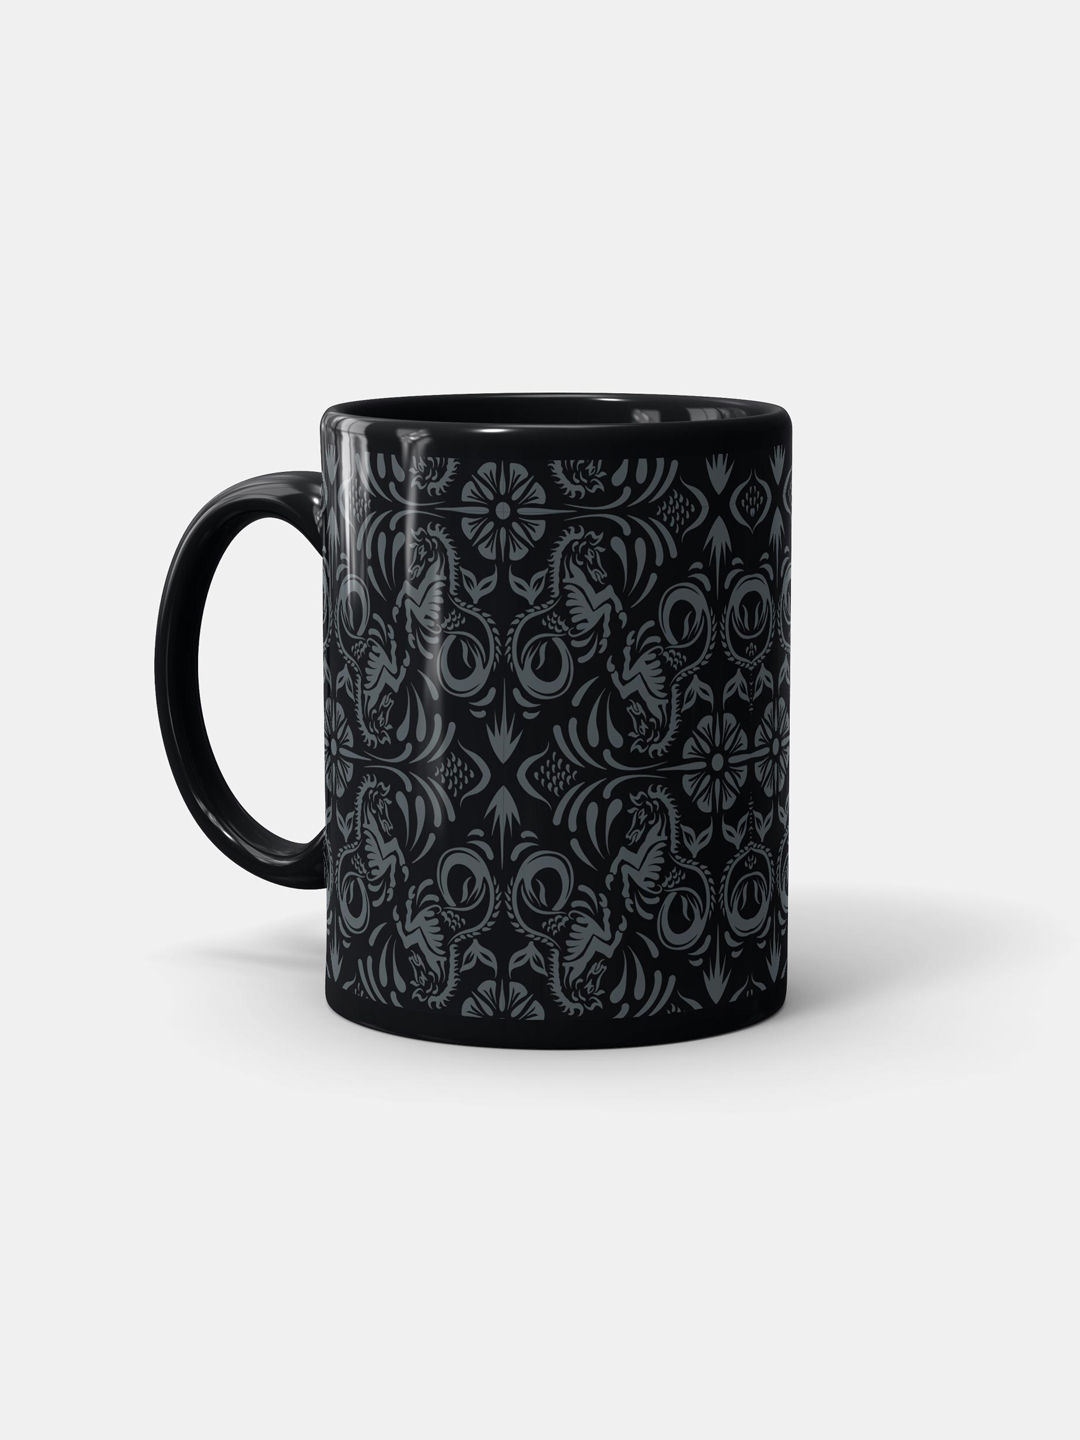 Buy Horse Pattern - Coffee Mugs Black Coffee Mugs Online